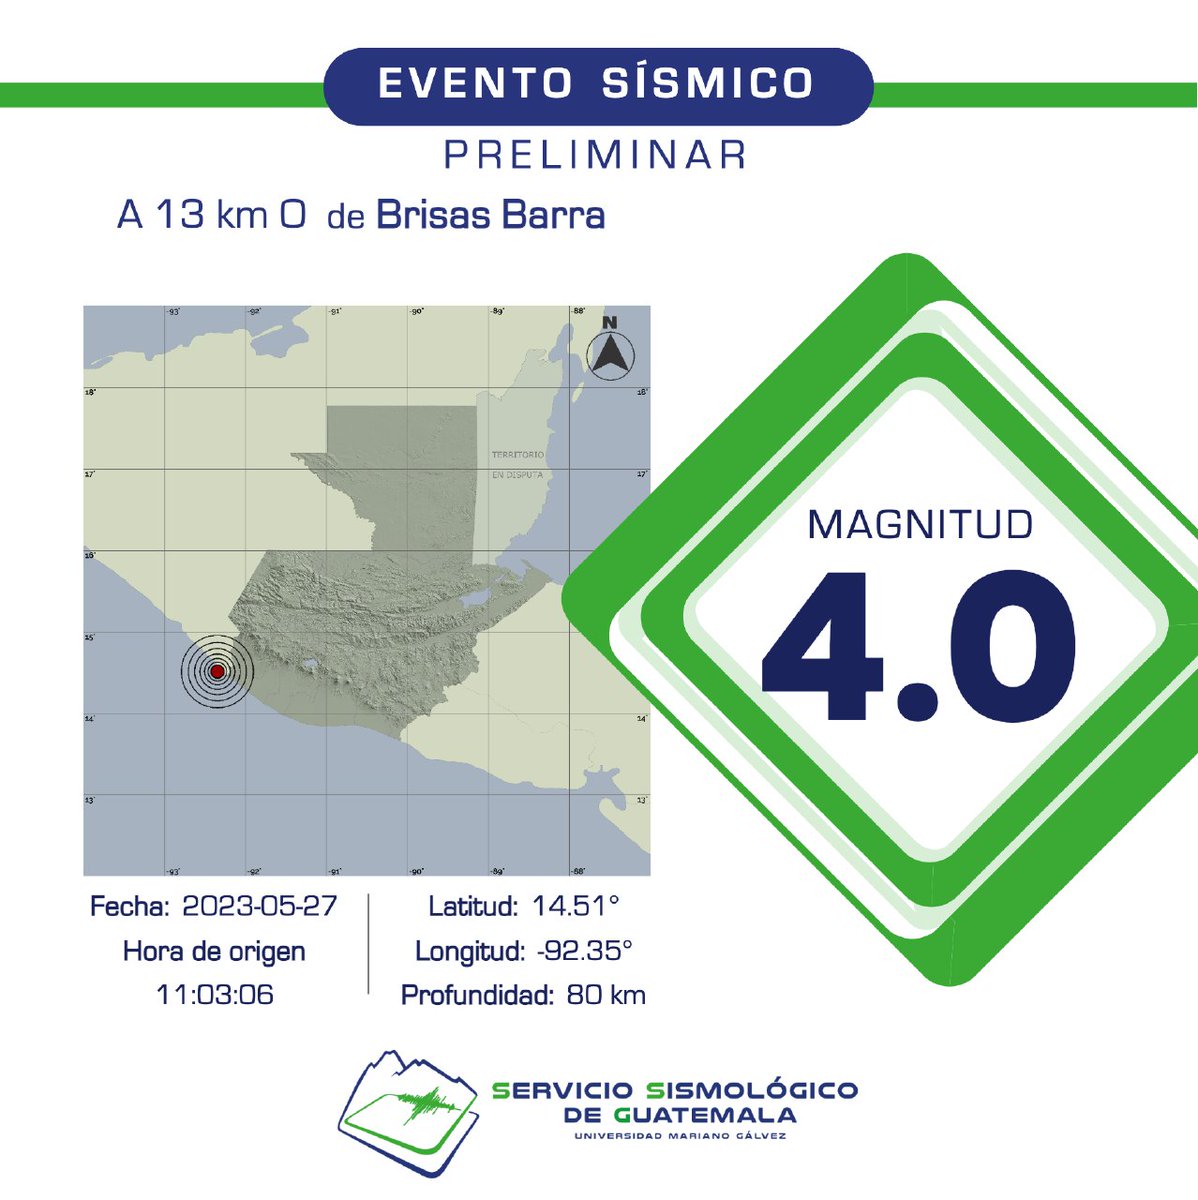 PRELIMINAR
Sismo registrado a 13 km O de Brisas Barra de Suchiate, México. #Temblor #TemblorGT #Sismo #SismoGT